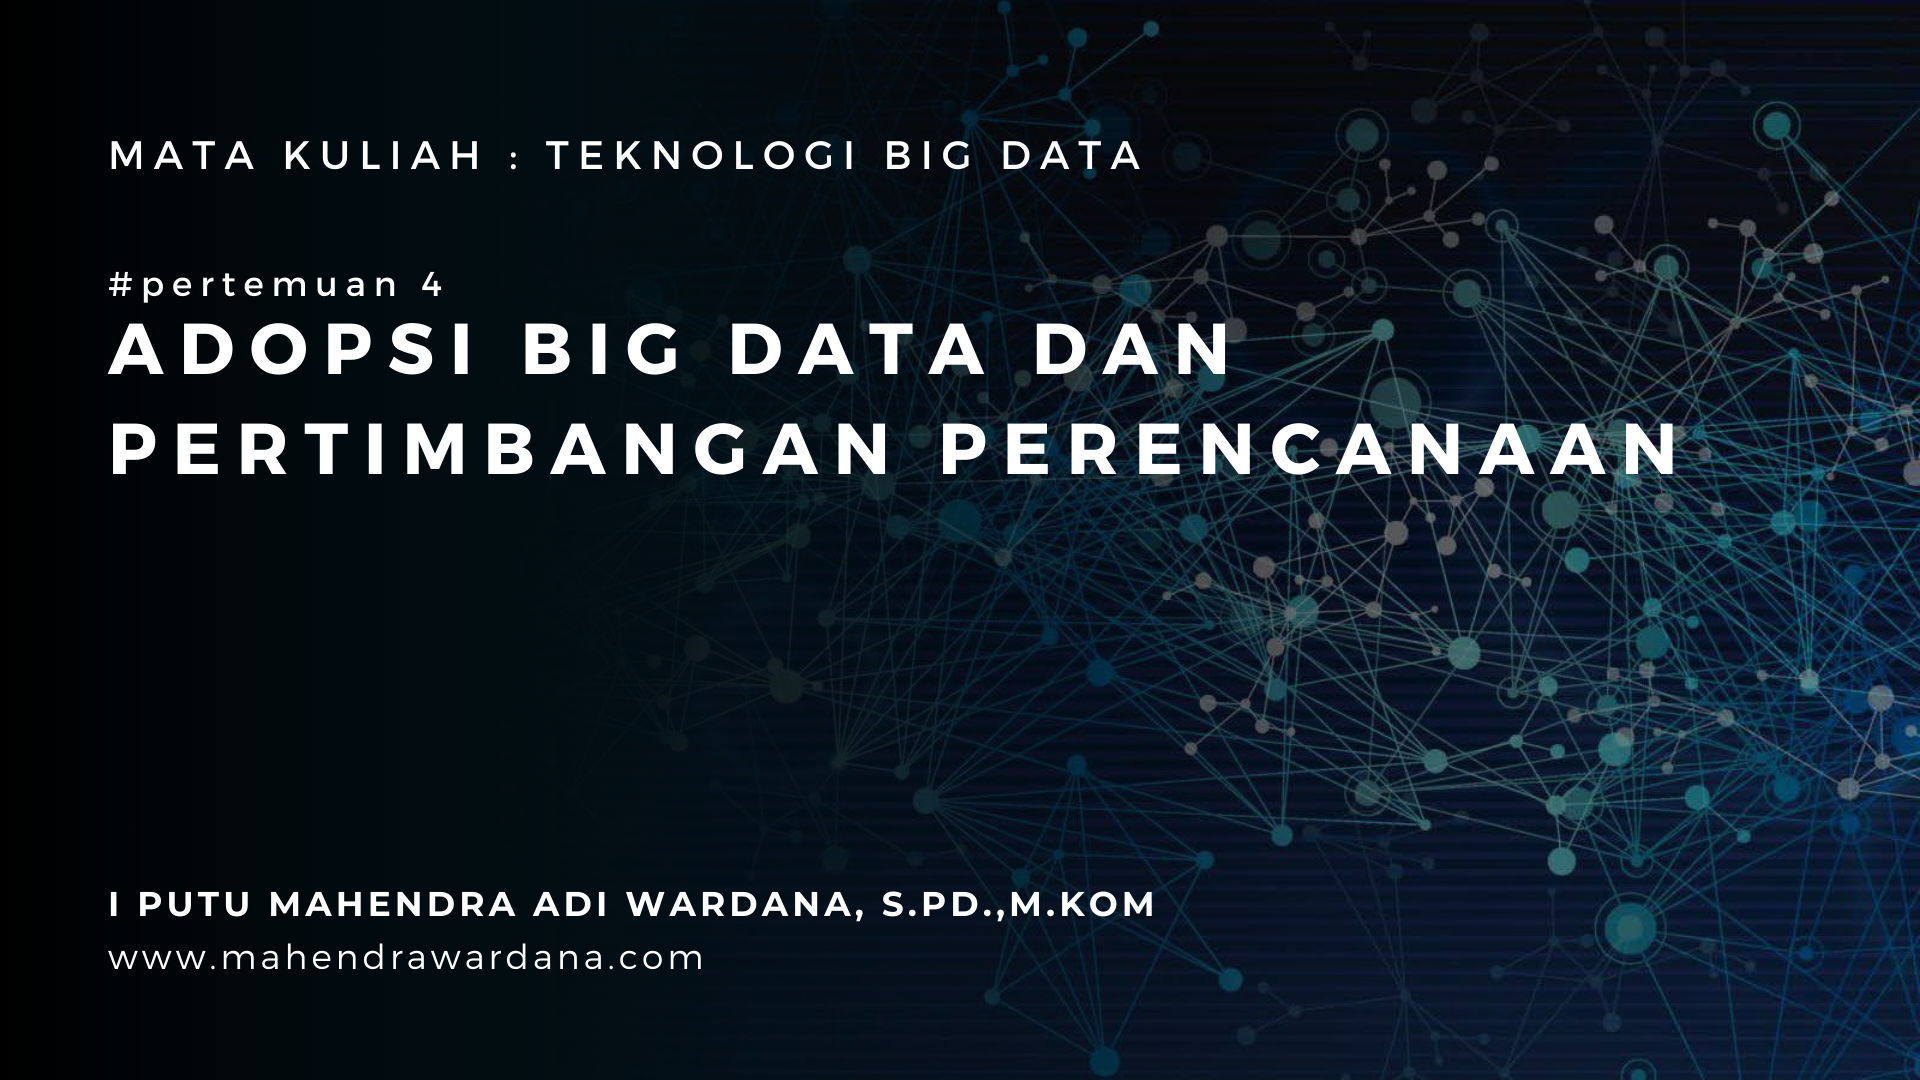 Pertemuan 4 - Adopsi Big Data Dan Pertimbangan Perencanaan